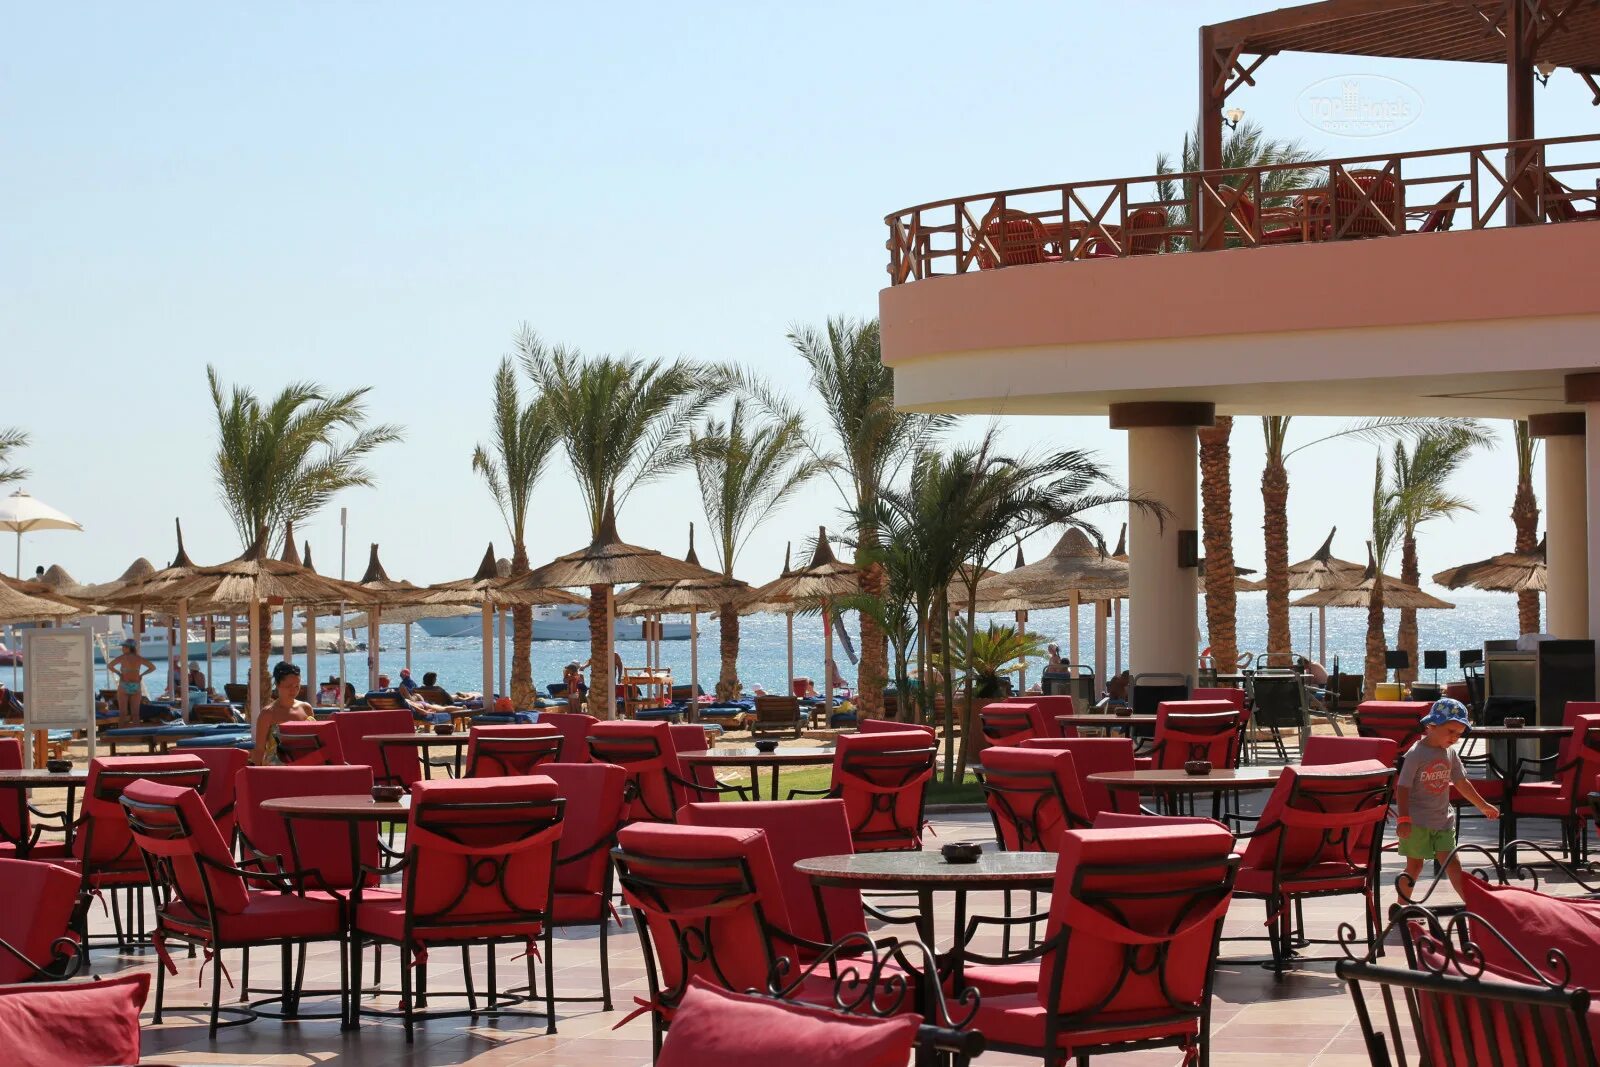 Отель Beach Albatros Resort 4. Хургада Beach Albatros Resort. Beach Albatros Resort Hurghada 4 Хургада. Отель в Египте Альбатрос Бич. Серри бич хургада